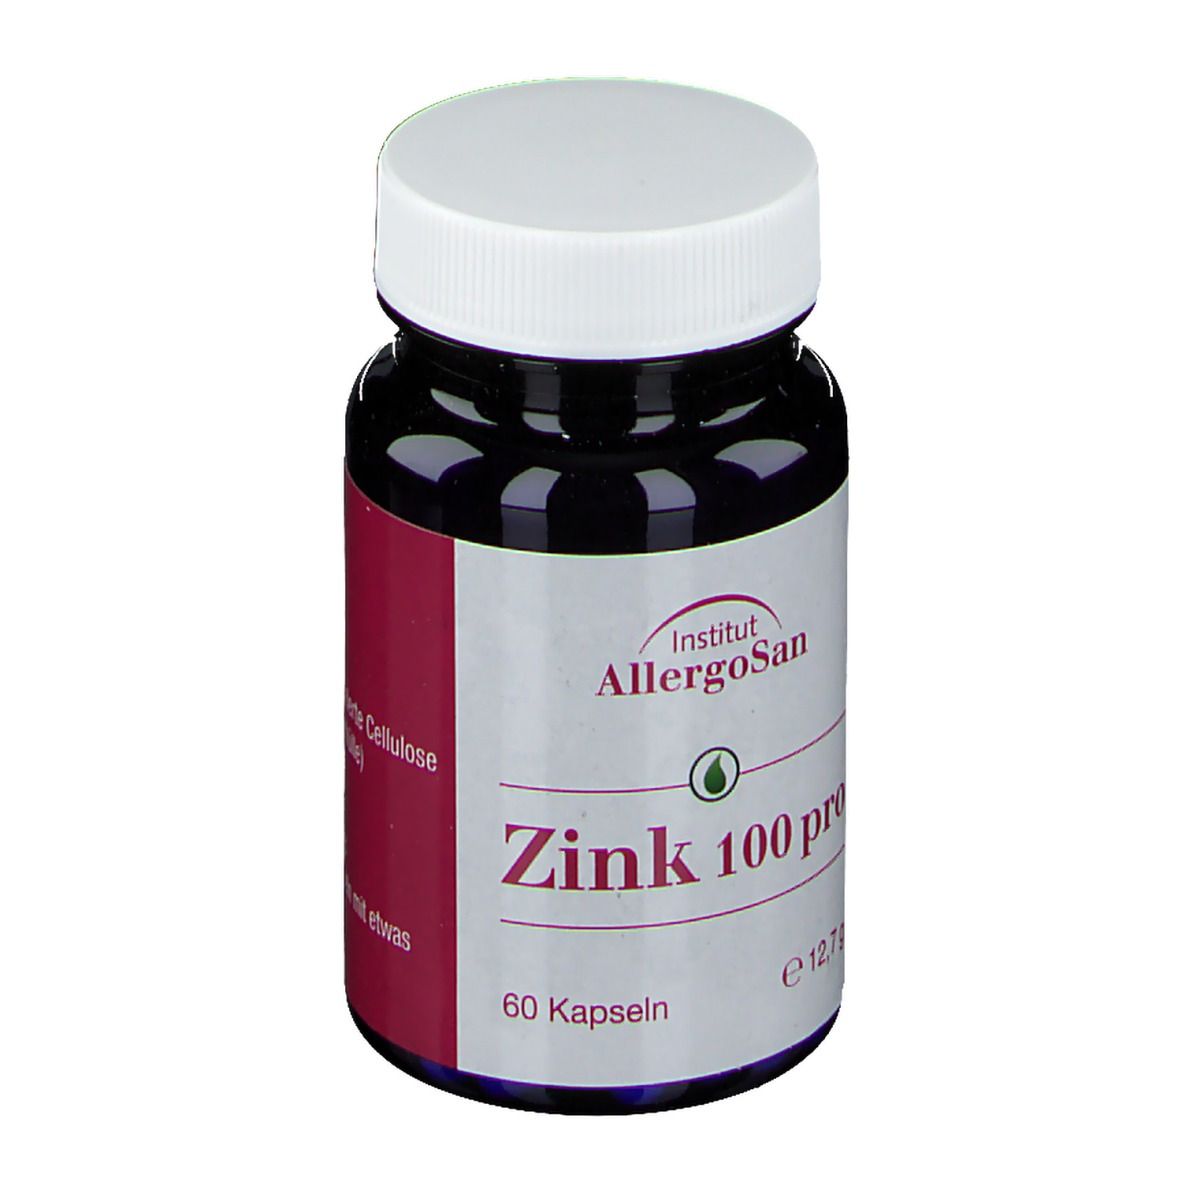 Allergosan® Zink 100 Pro